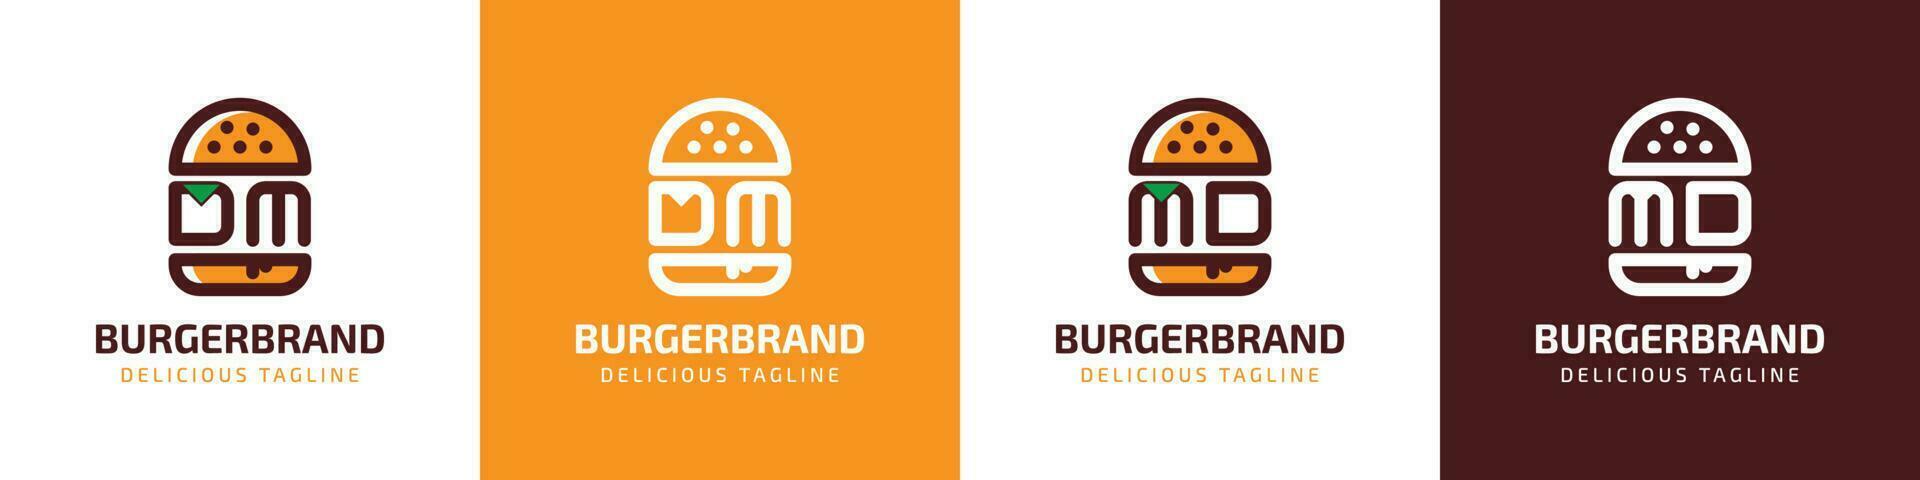 carta dm e md hamburguer logotipo, adequado para qualquer o negócio relacionado para hamburguer com dm ou md iniciais. vetor